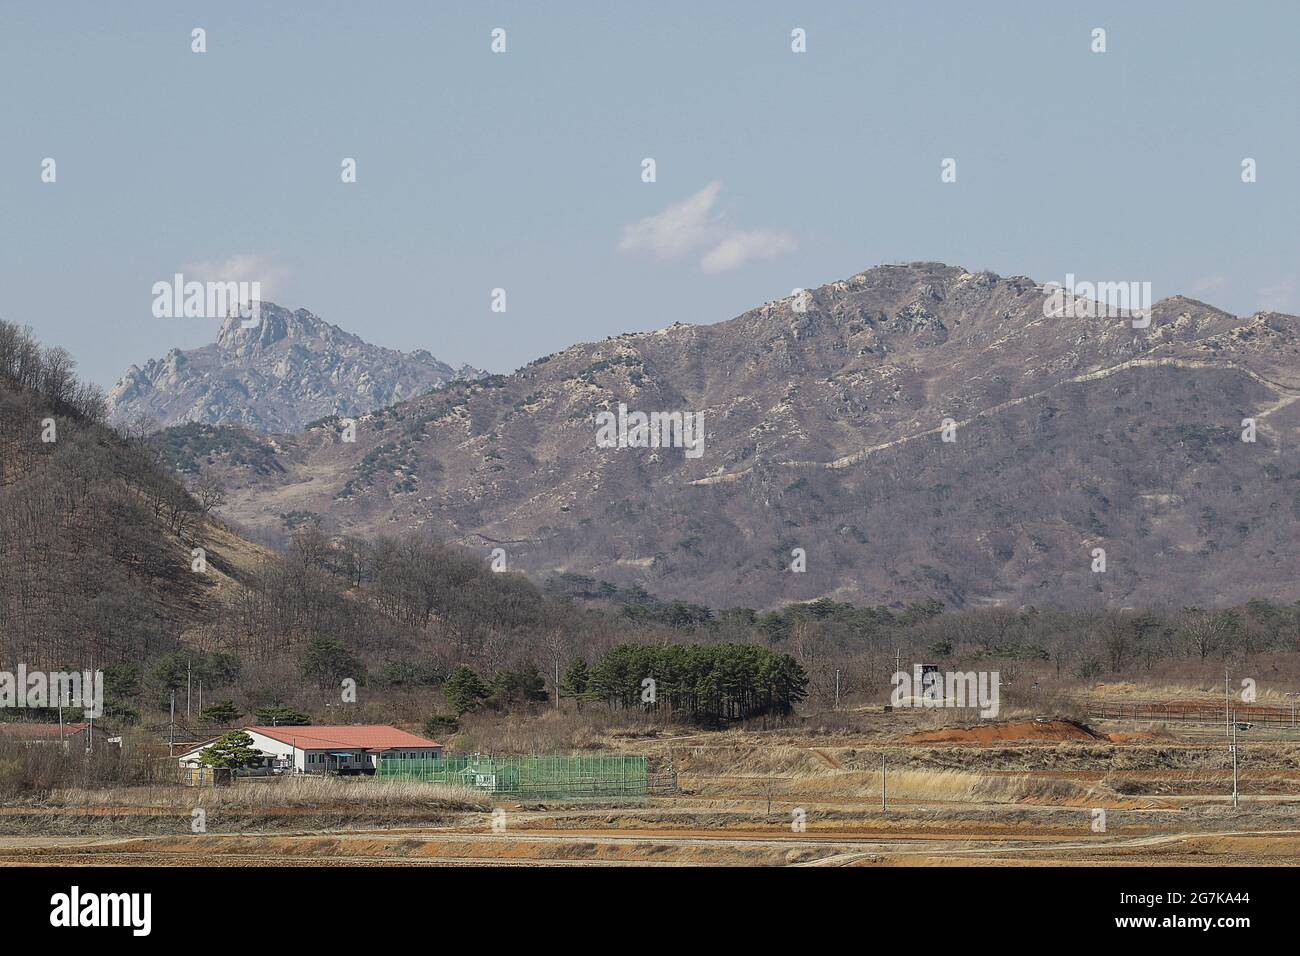 11 de abril de 2018-Goyang, Corea del Sur-Una visión de la batalla de la guerra de Corea del caballo blanco y la Línea de Control Civil en Cheorwon, Corea del Sur. La batalla del caballo blanco fue otra en una serie de sangrientas batallas por posiciones dominantes en la cima de la colina durante la guerra de Corea. Baengma-goji era una colina de 395 metros (1.296 pies) en el Triángulo del Hierro, formada por Pyonggang en su pico y Gimhwa-eup y Cheorwon en su base, era una ruta estratégica de transporte en la región central de la península de Corea. White Horse fue la cresta de una masa boscosa en una colina que se extendió en dirección noroeste-sureste por aproximadamente dos millas Foto de stock